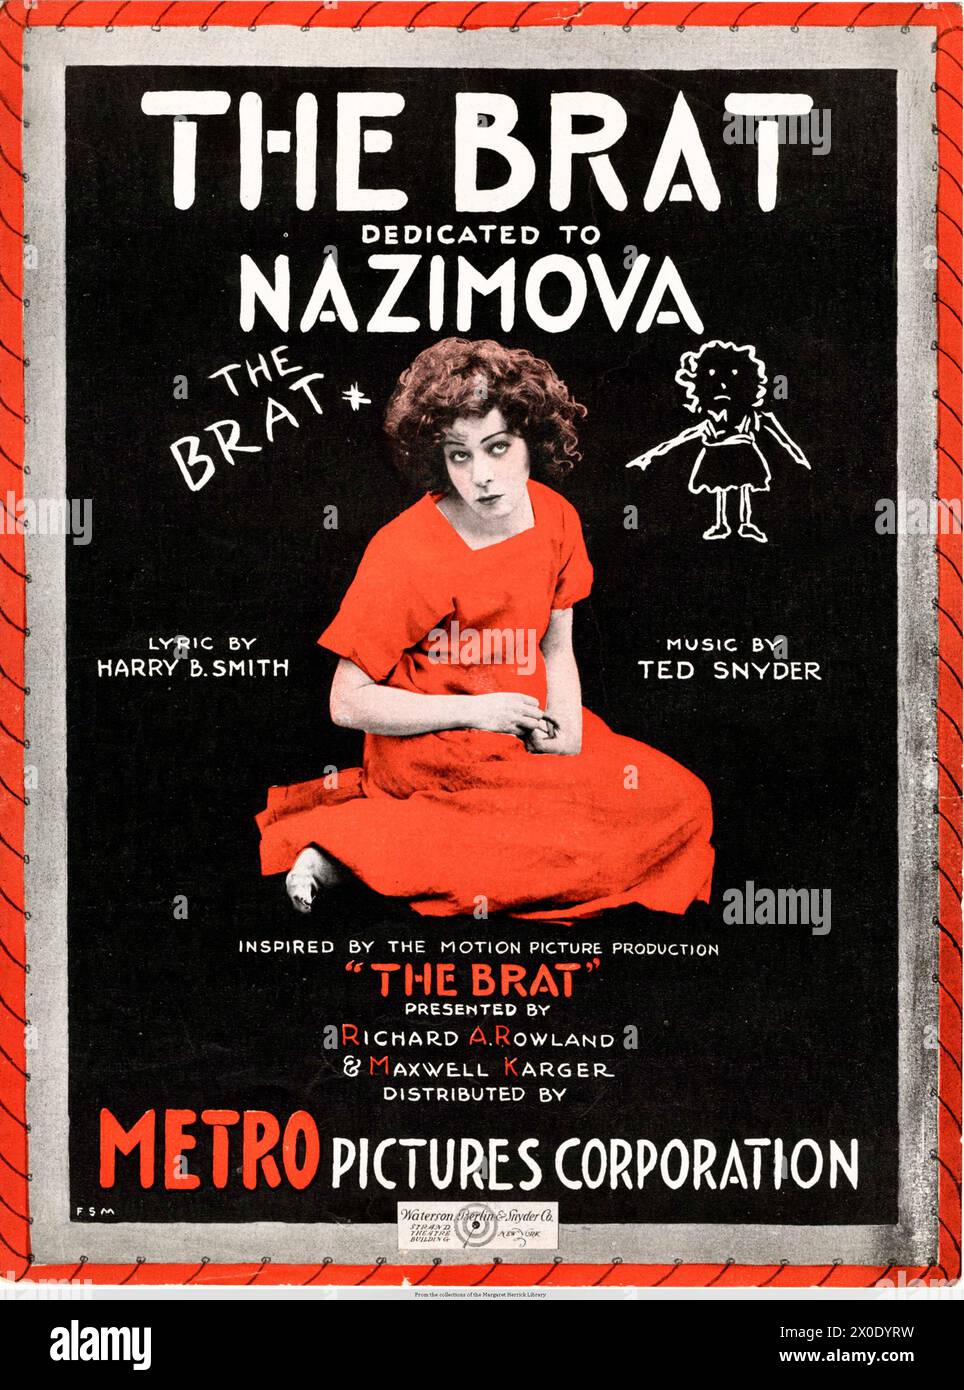 Il Brat - dedicato a Nazimova Foto Stock